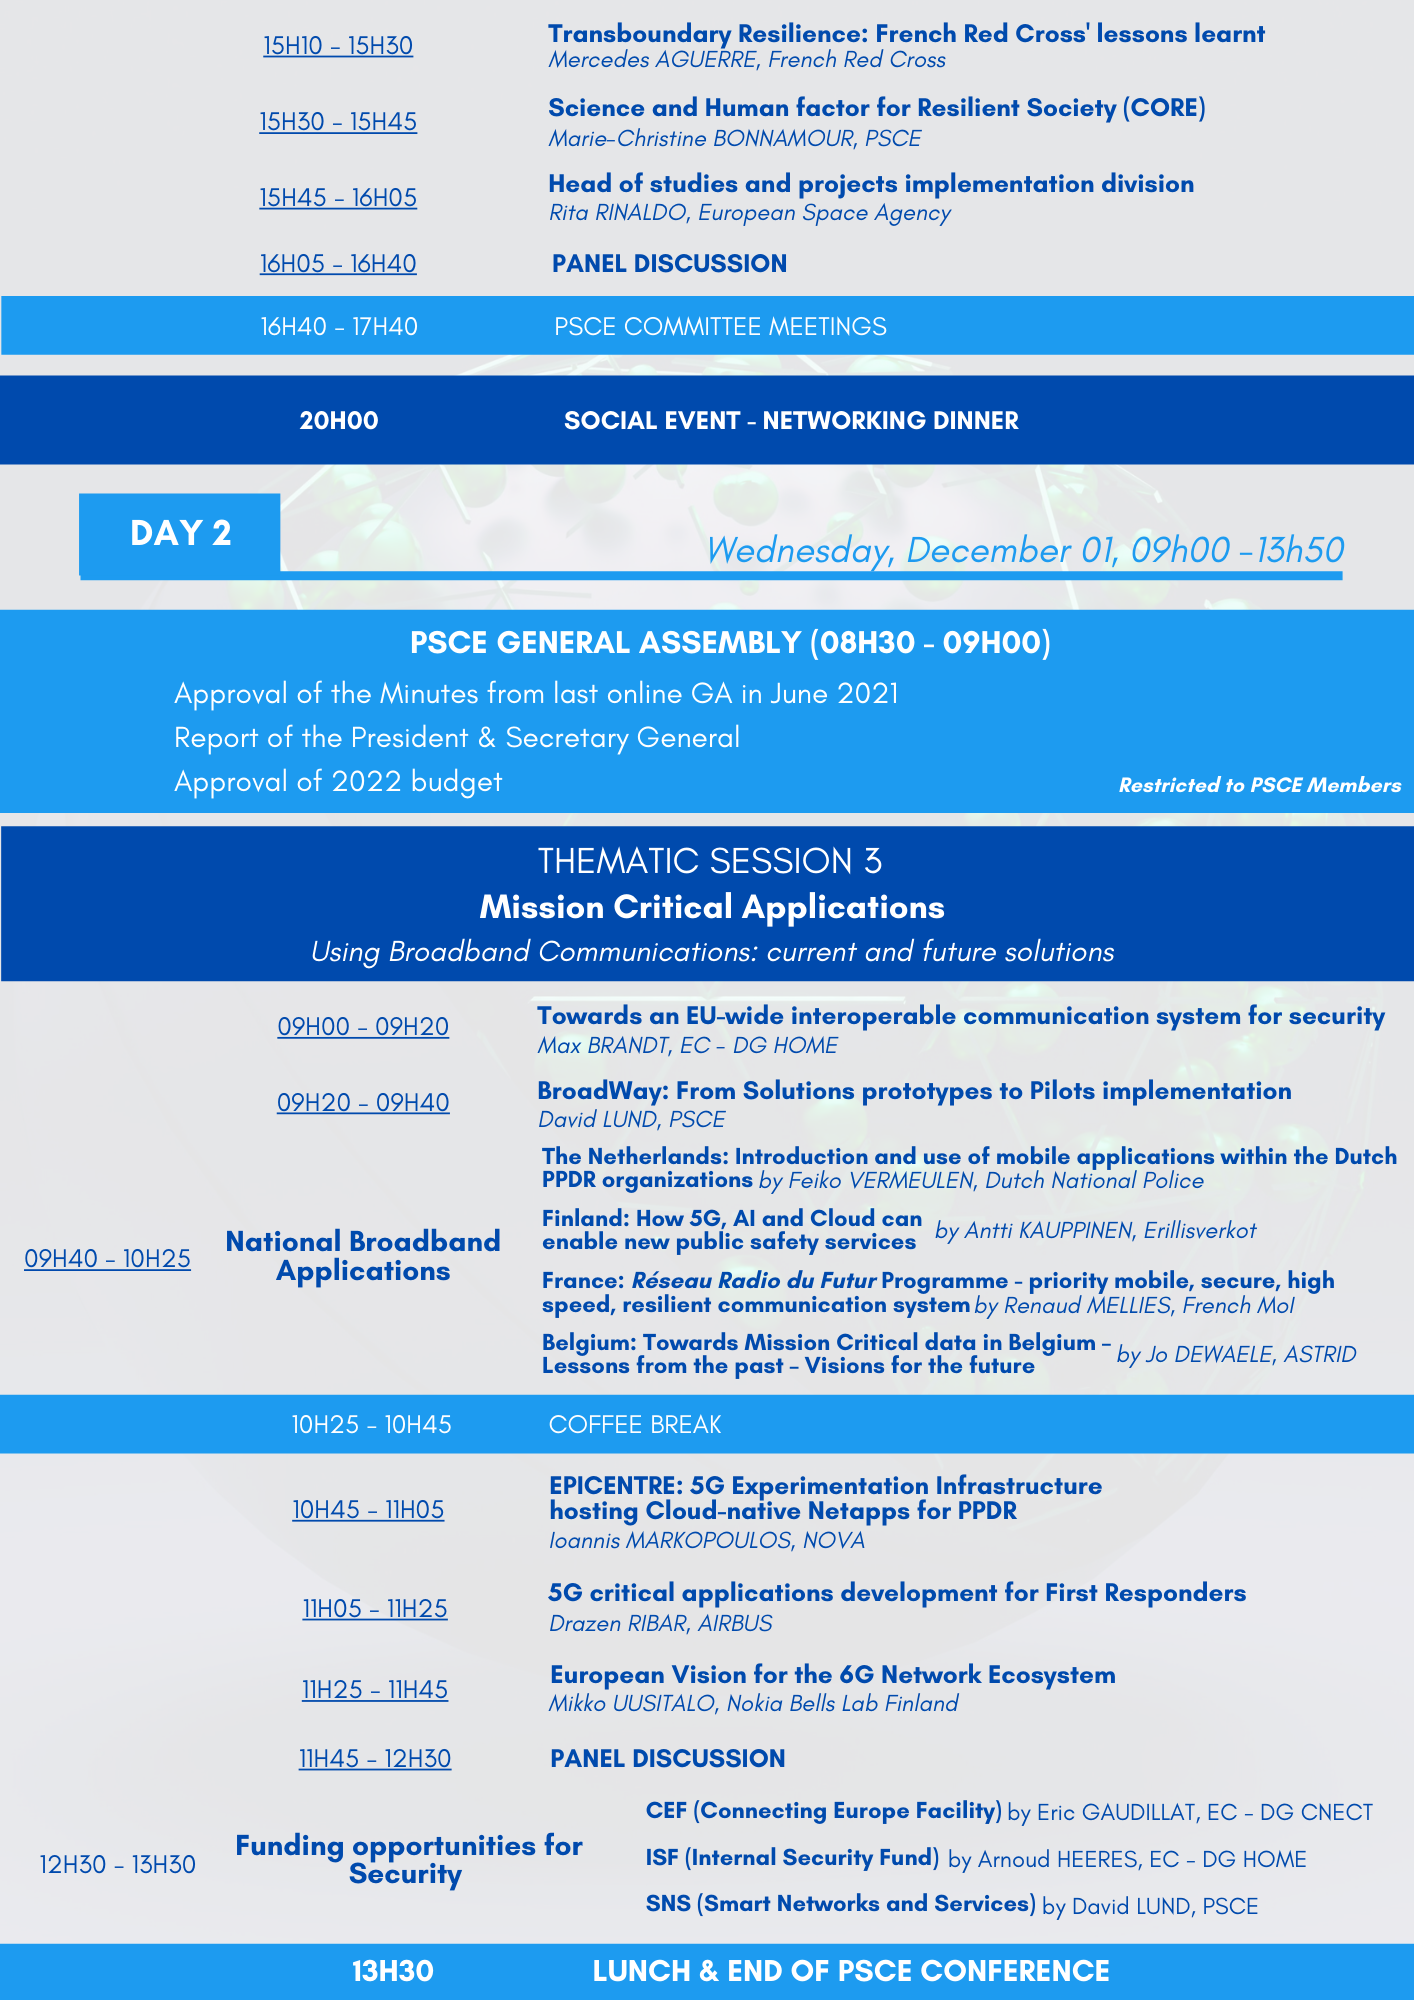 PSCE Conference in Brussels Agenda V13.101